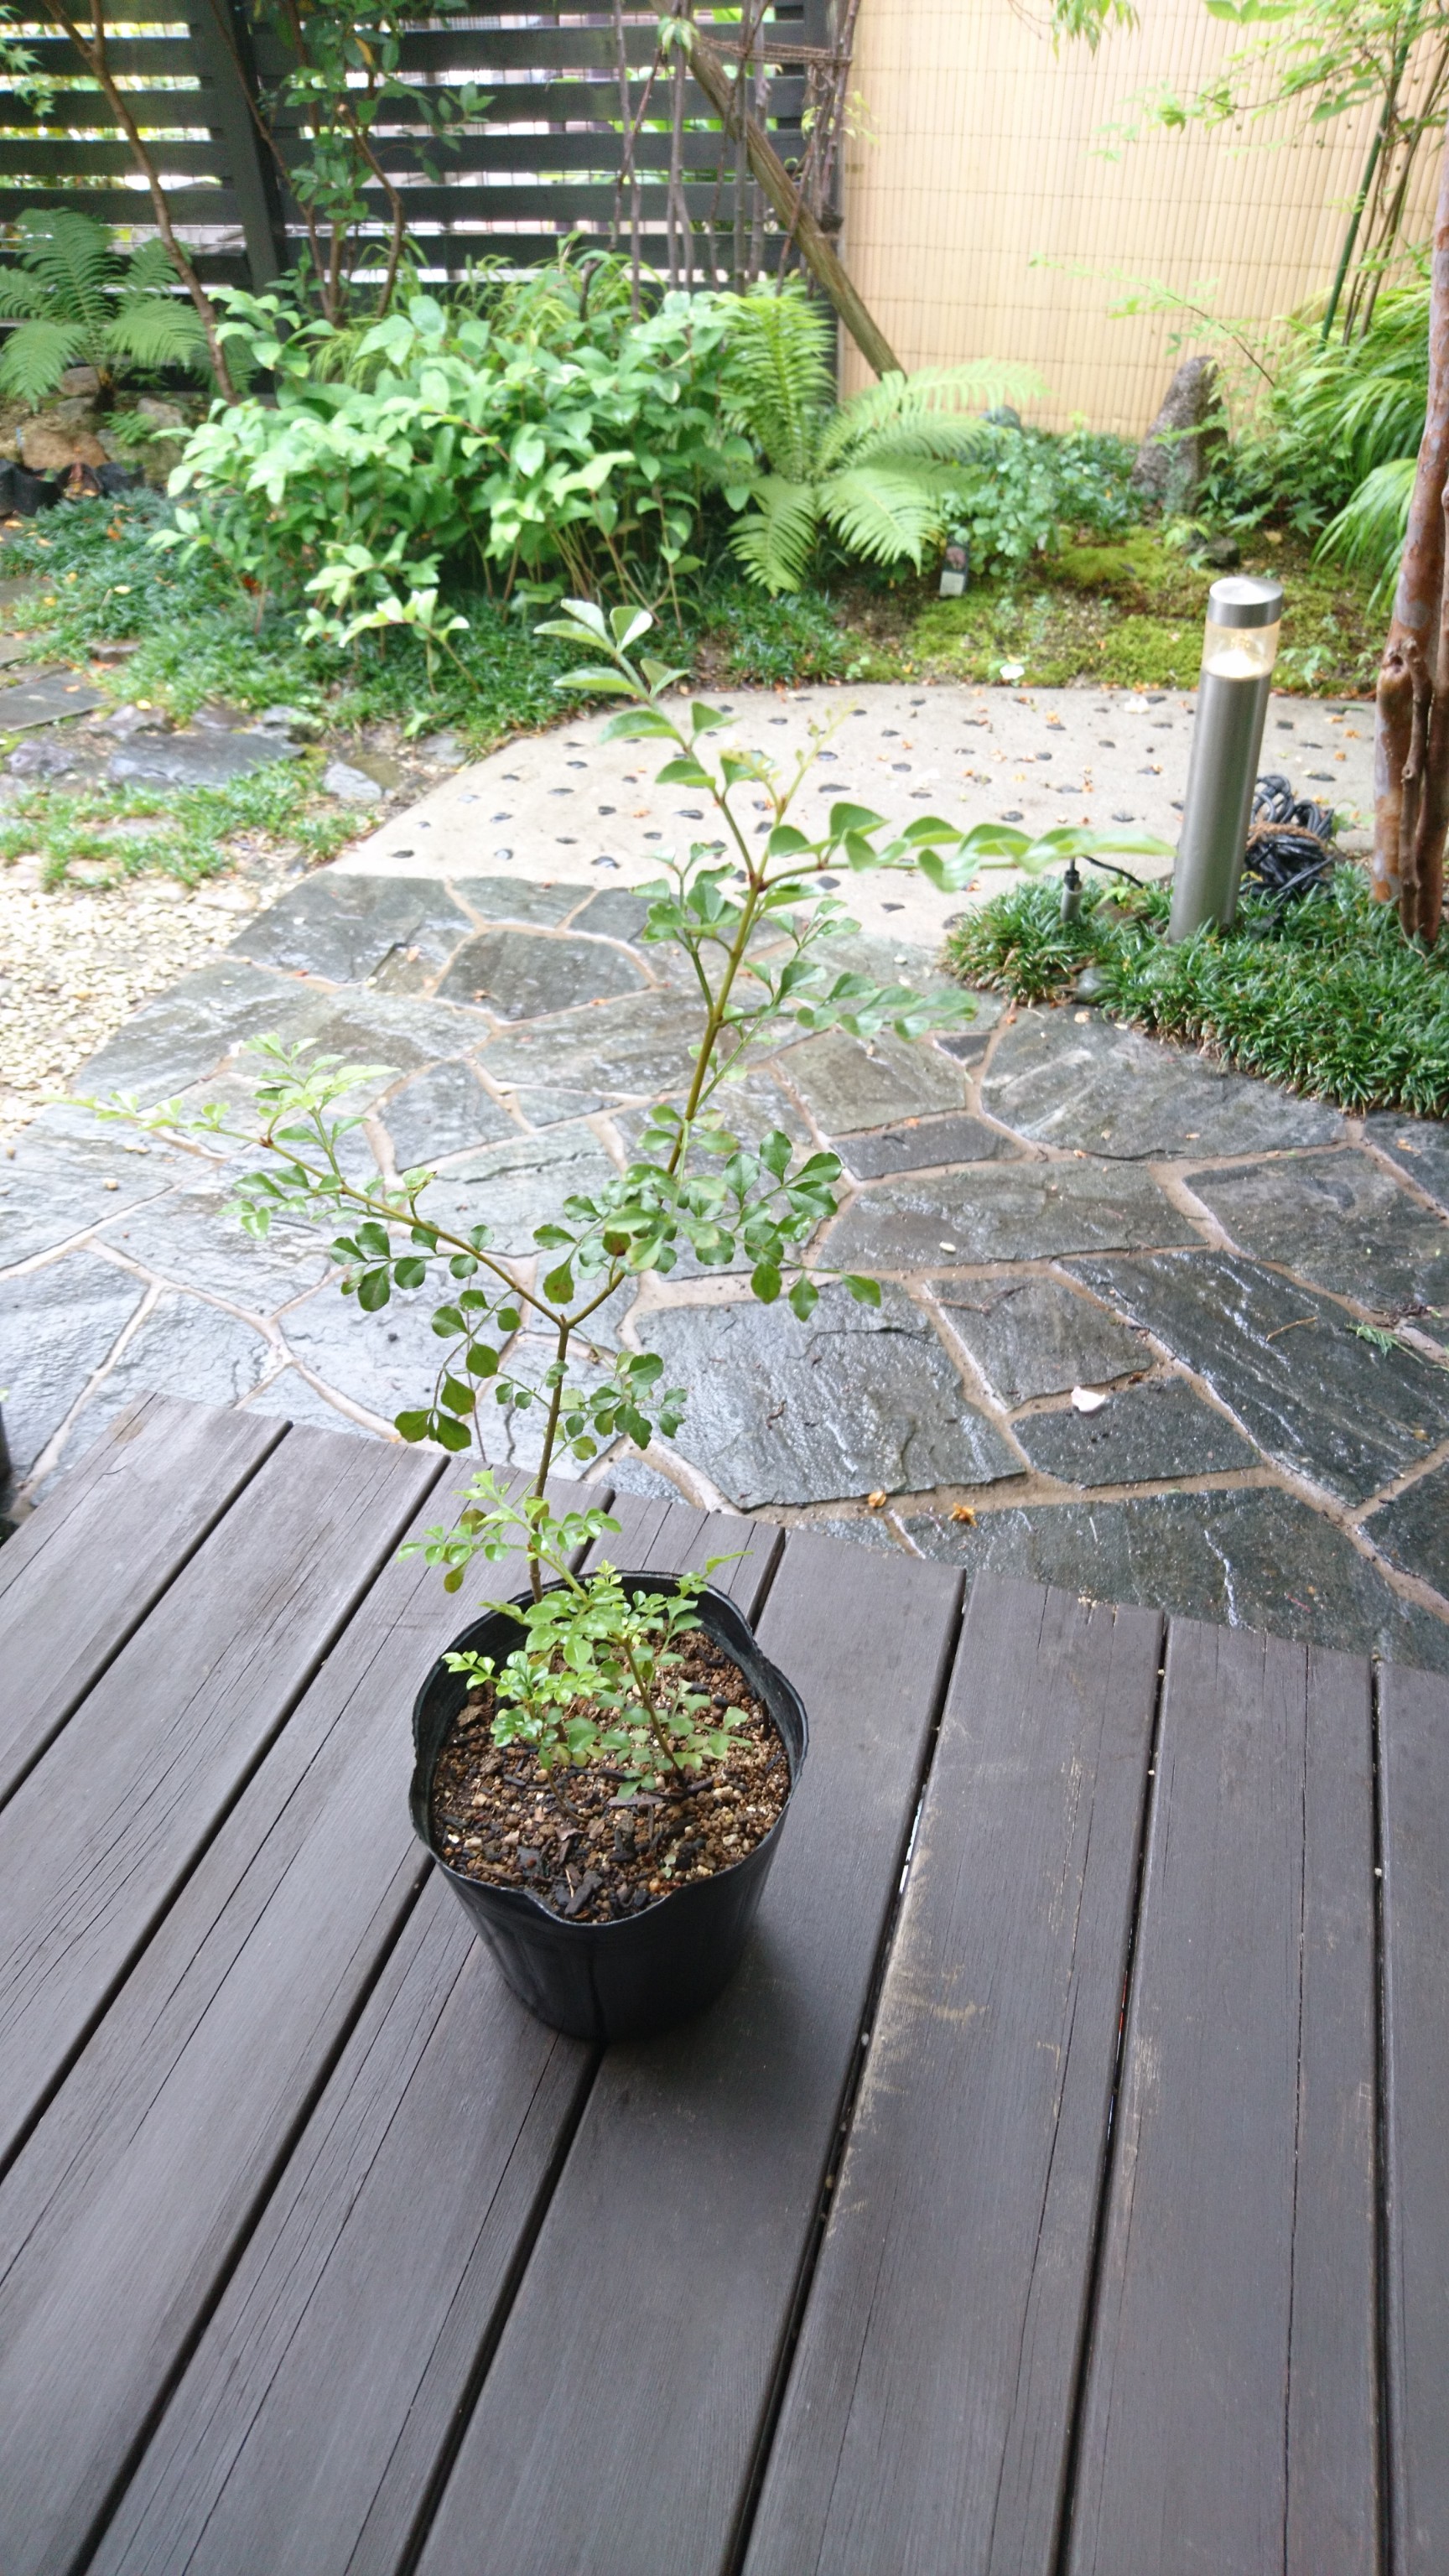 シマトネリコ 苗木 約36 45cm シンボルツリーとして人気の樹種です Iichi ハンドメイド クラフト作品 手仕事品の通販